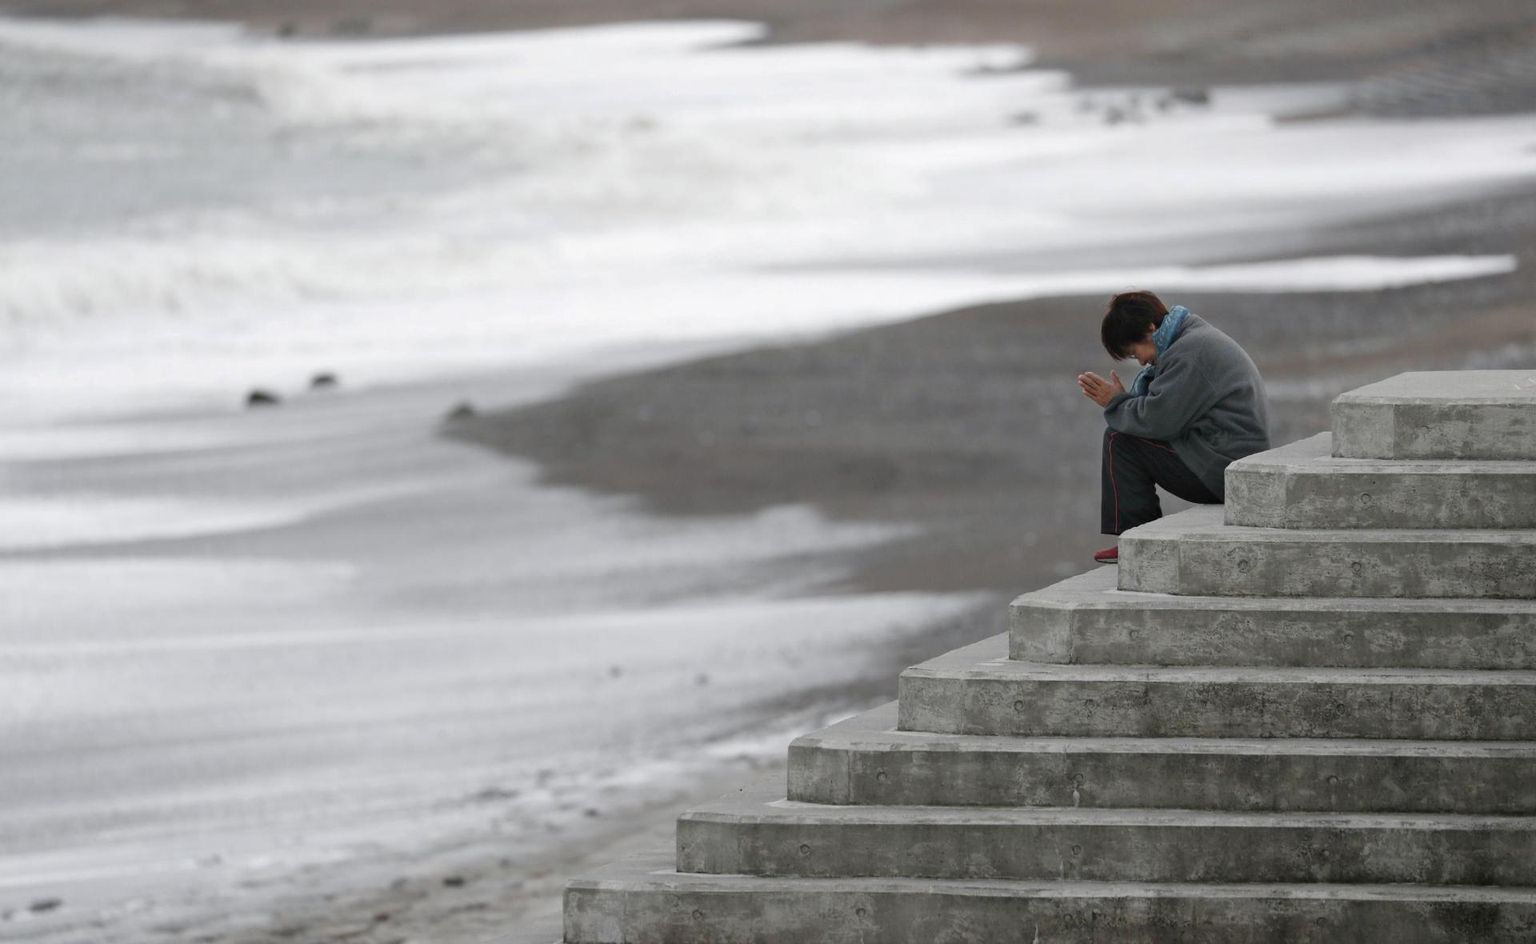 Jaapani naine palvetamas mere poole, mälestades Jaapani kolmikkatastroofi ohvreid.